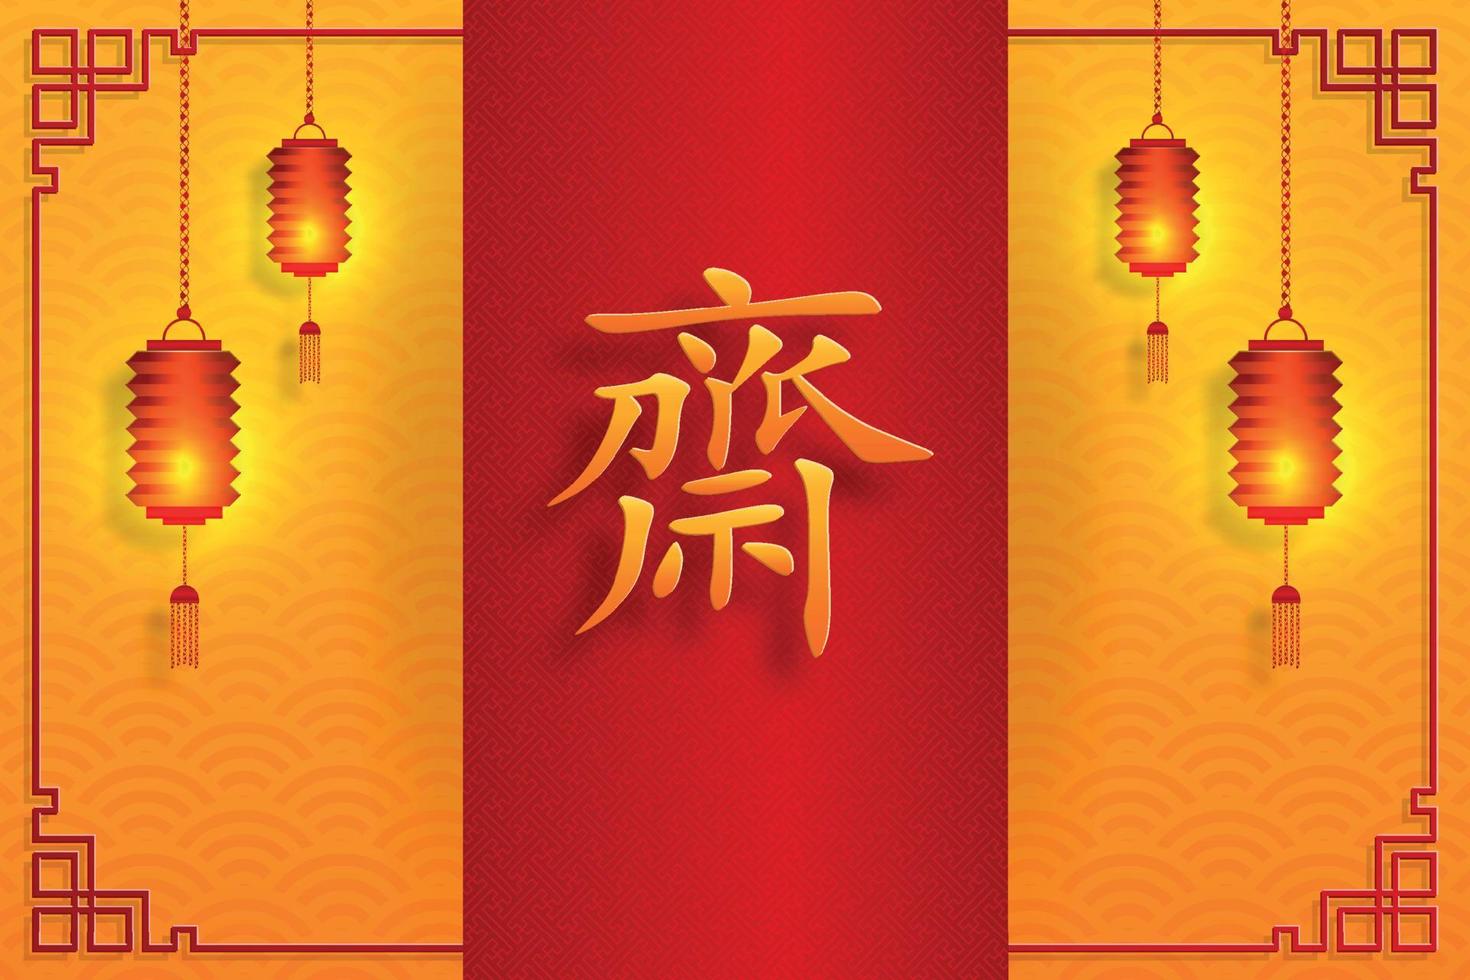 chinesisches vegetarisches festival, papierschnitt und asiatische elemente mit handwerklichem stil auf farbigem hintergrund vektor